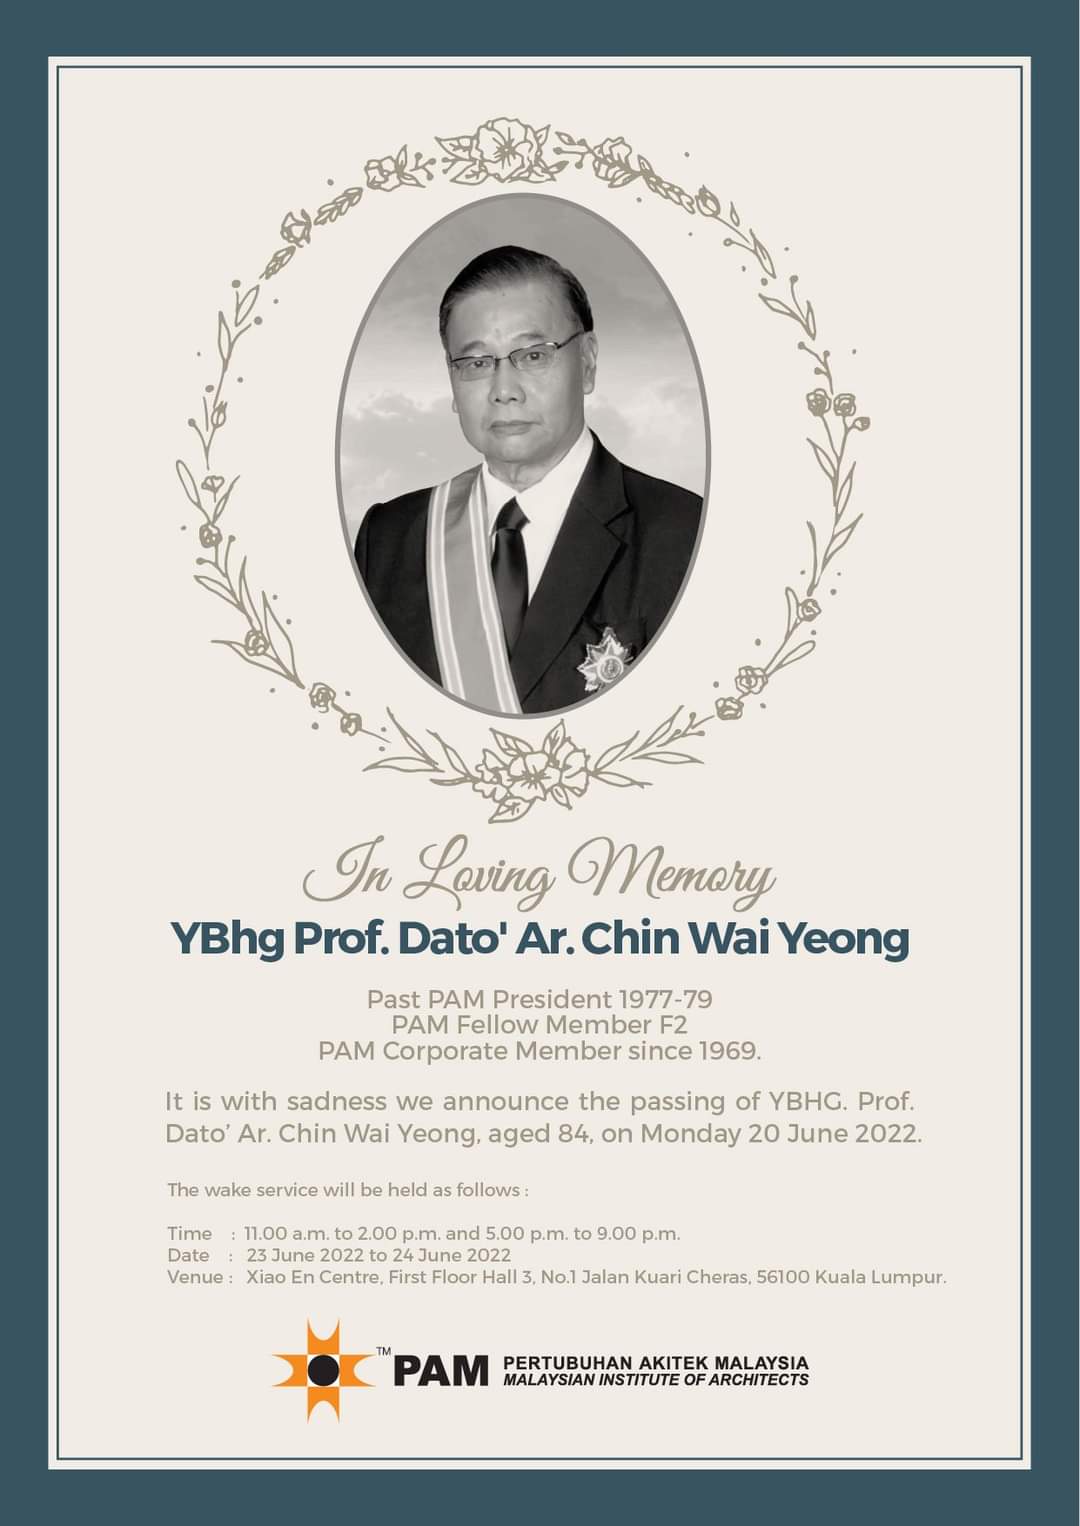 YBhg Prof. Dato' Ar. Chin Wai Yeong